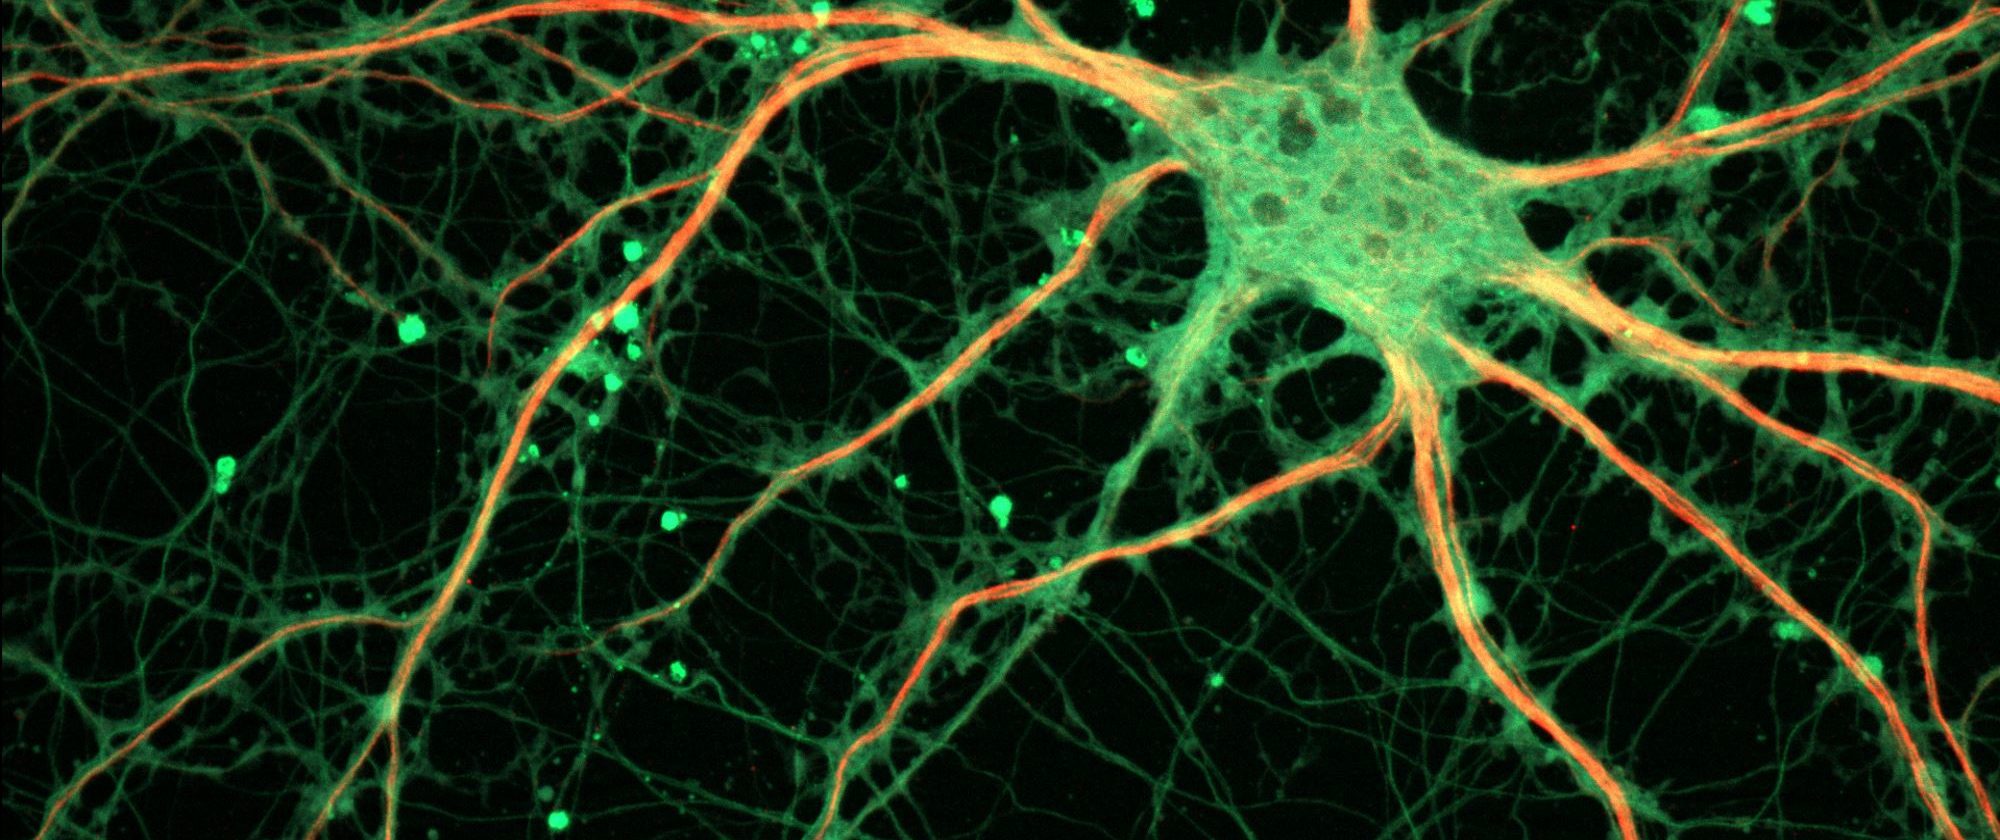 Los canales iónicos juegan un papel esencial en las sinapsis. Sin estos canales, el sistema nervioso no sería capaz de enviar ni recibir señales (Imagen de ZEISS Microscopy en Wikipedia).